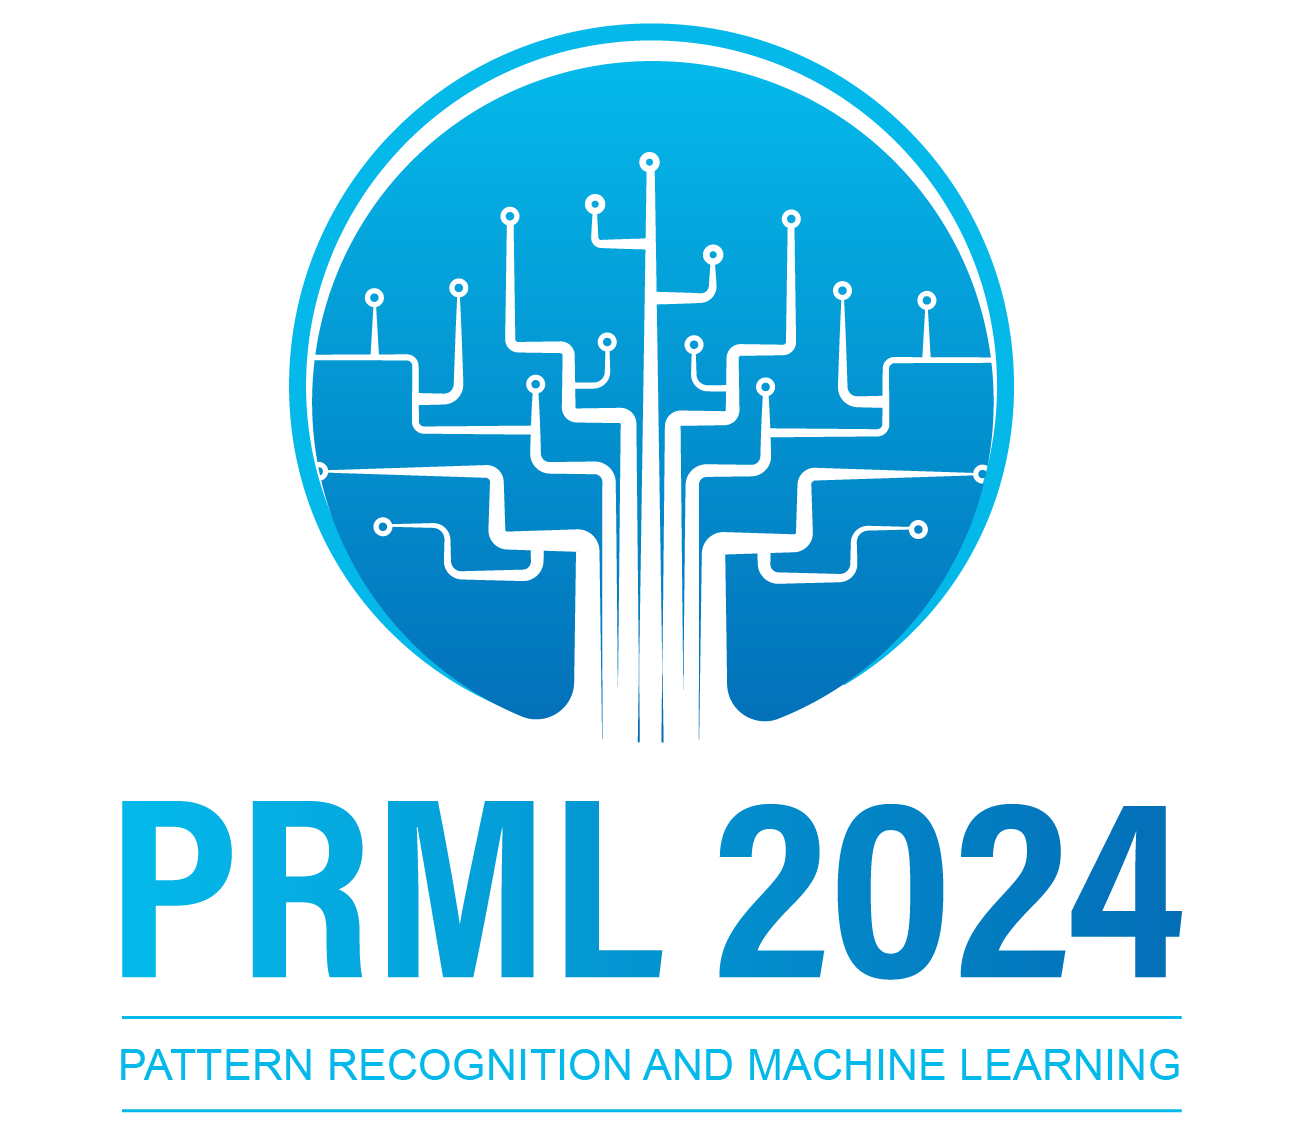 PRML 2022